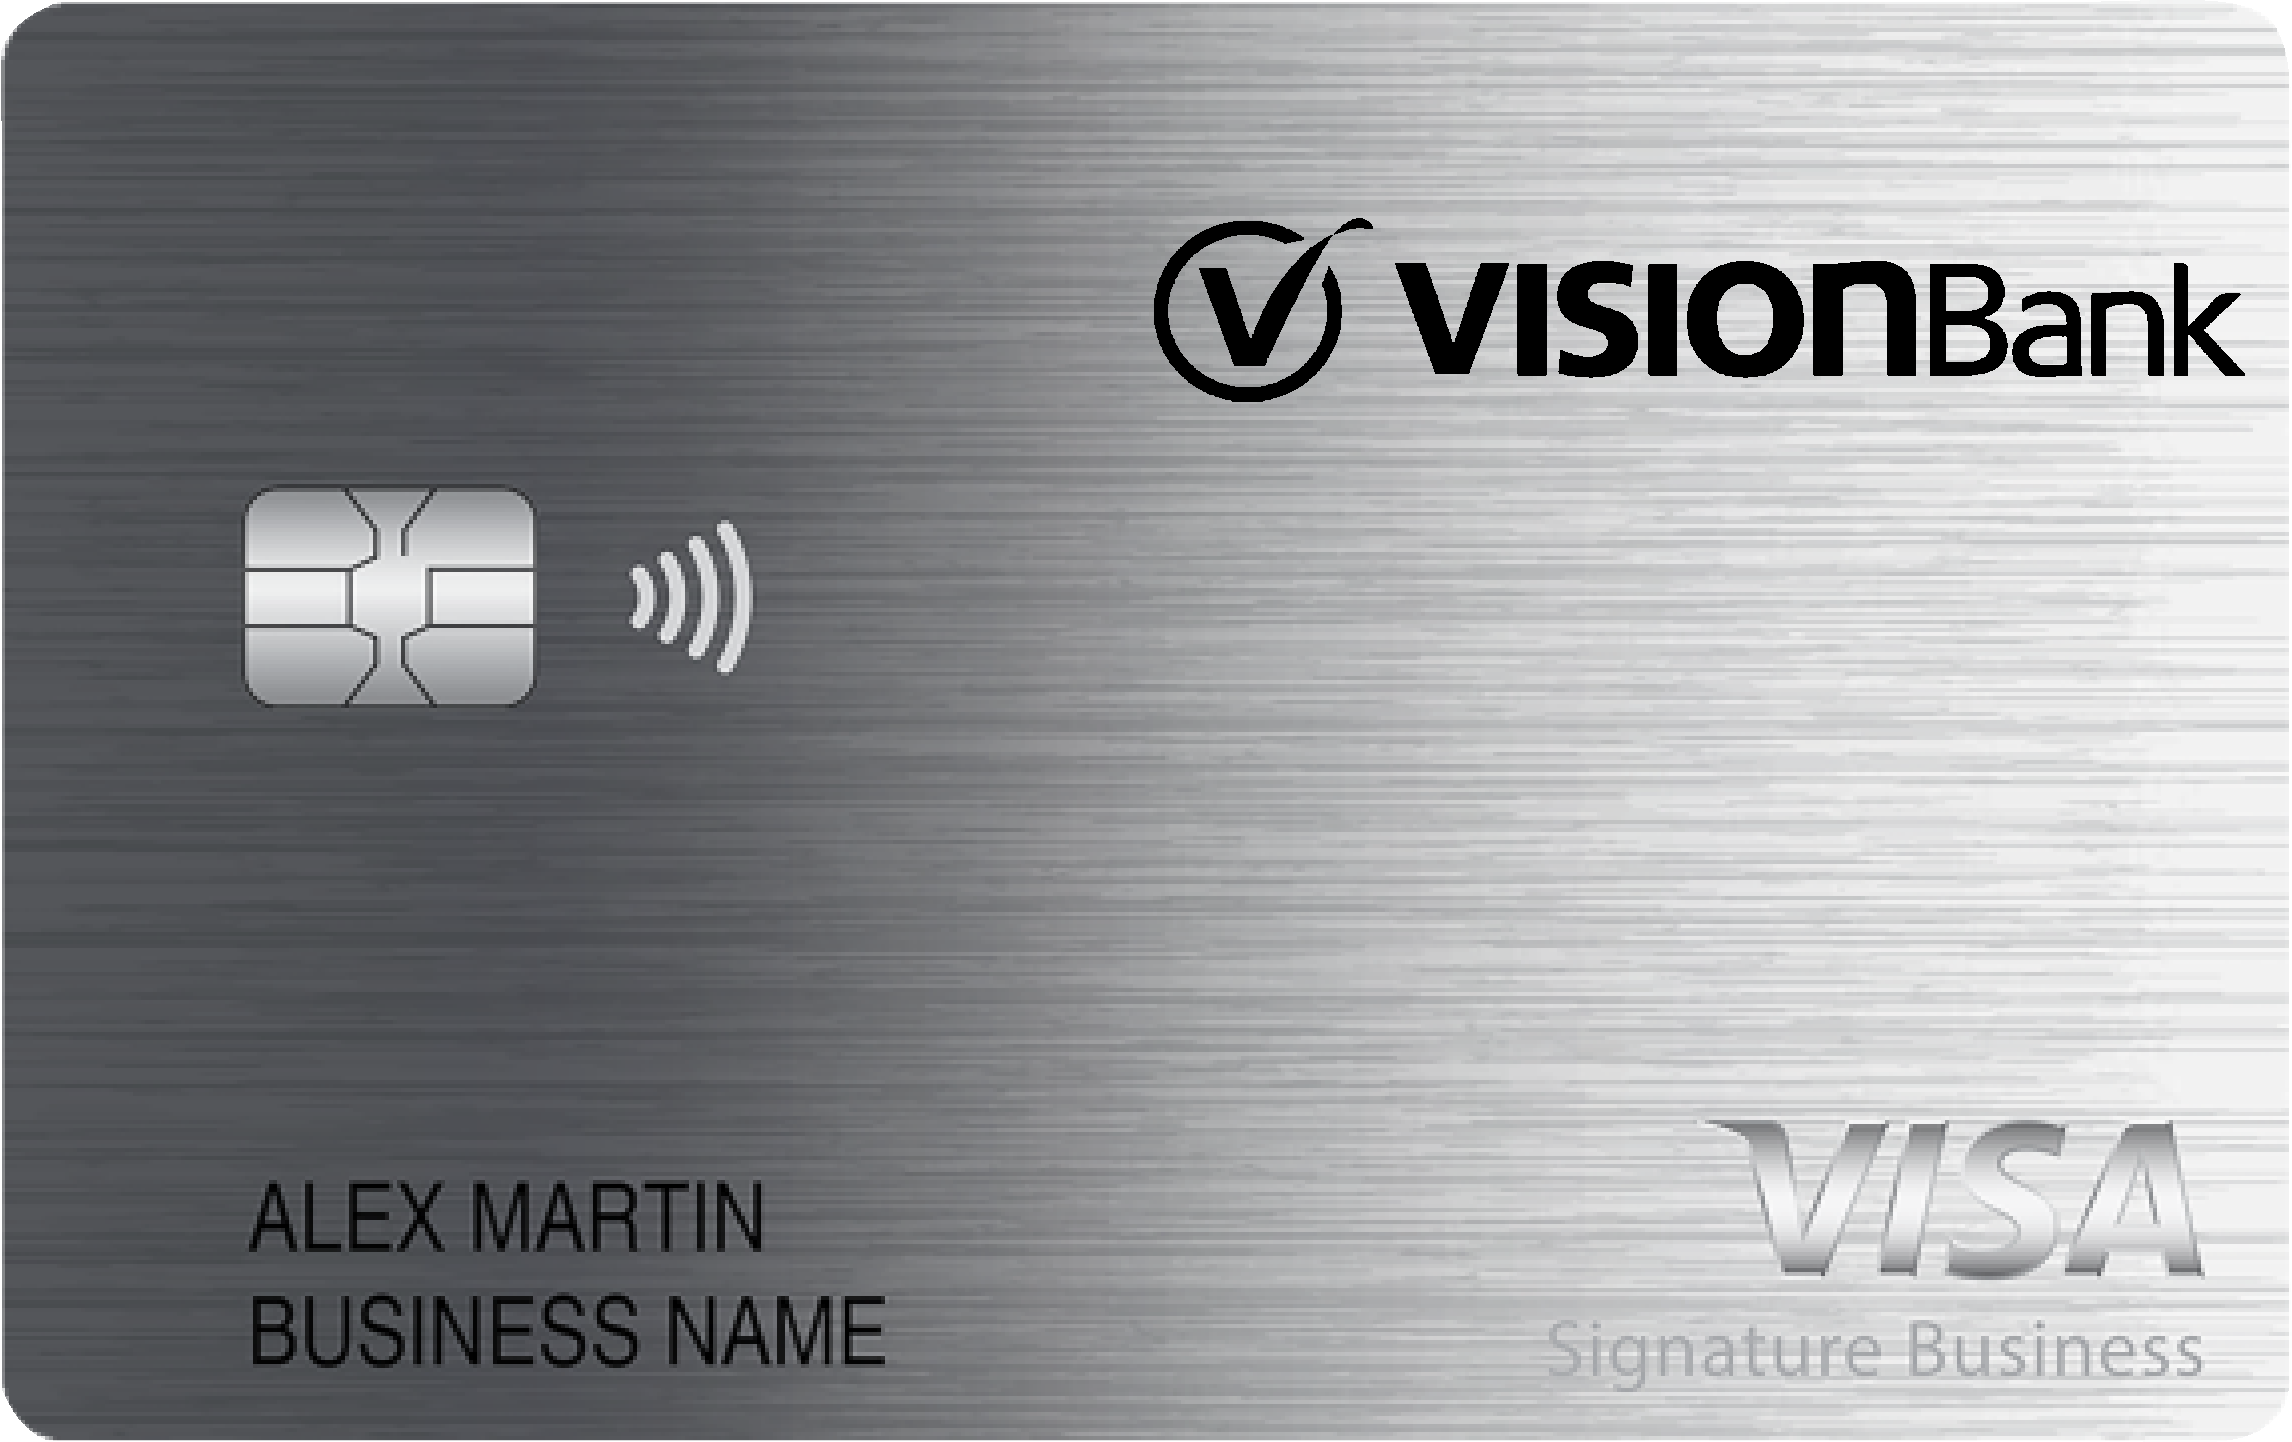 VisionBank Smart Business Rewards Card